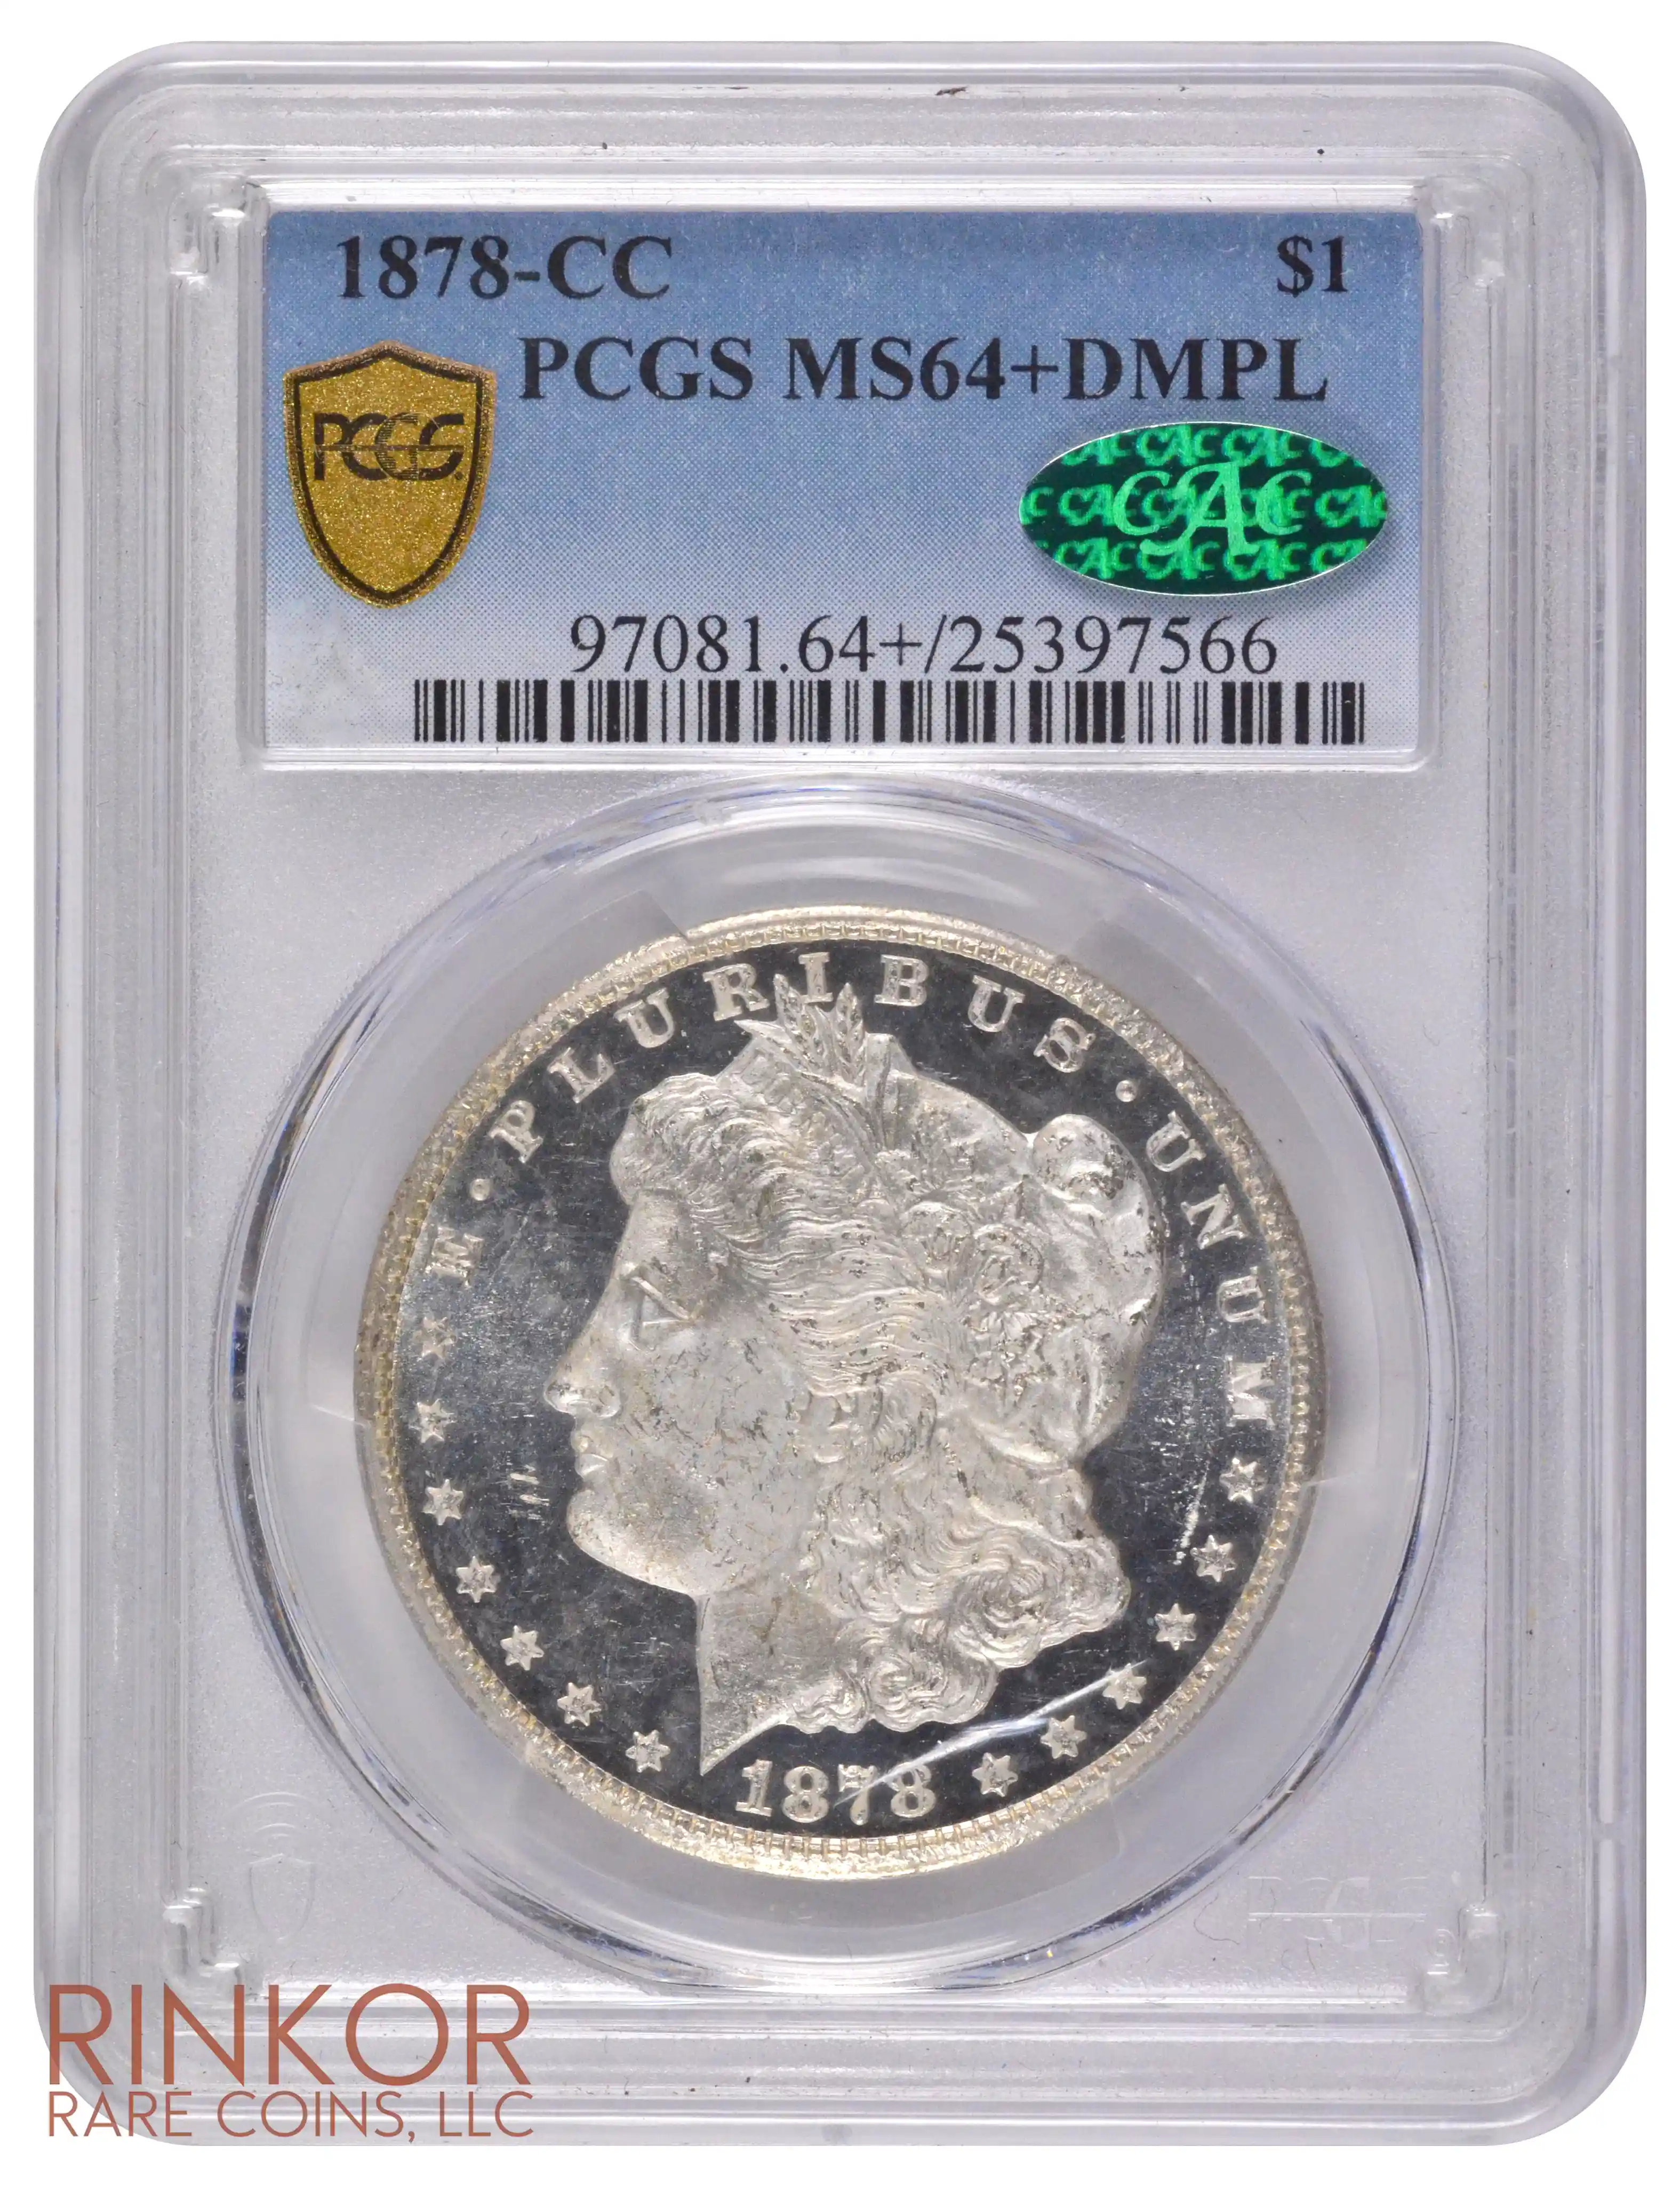 1878-CC $1 PCGS MS 64+ DMPL CAC